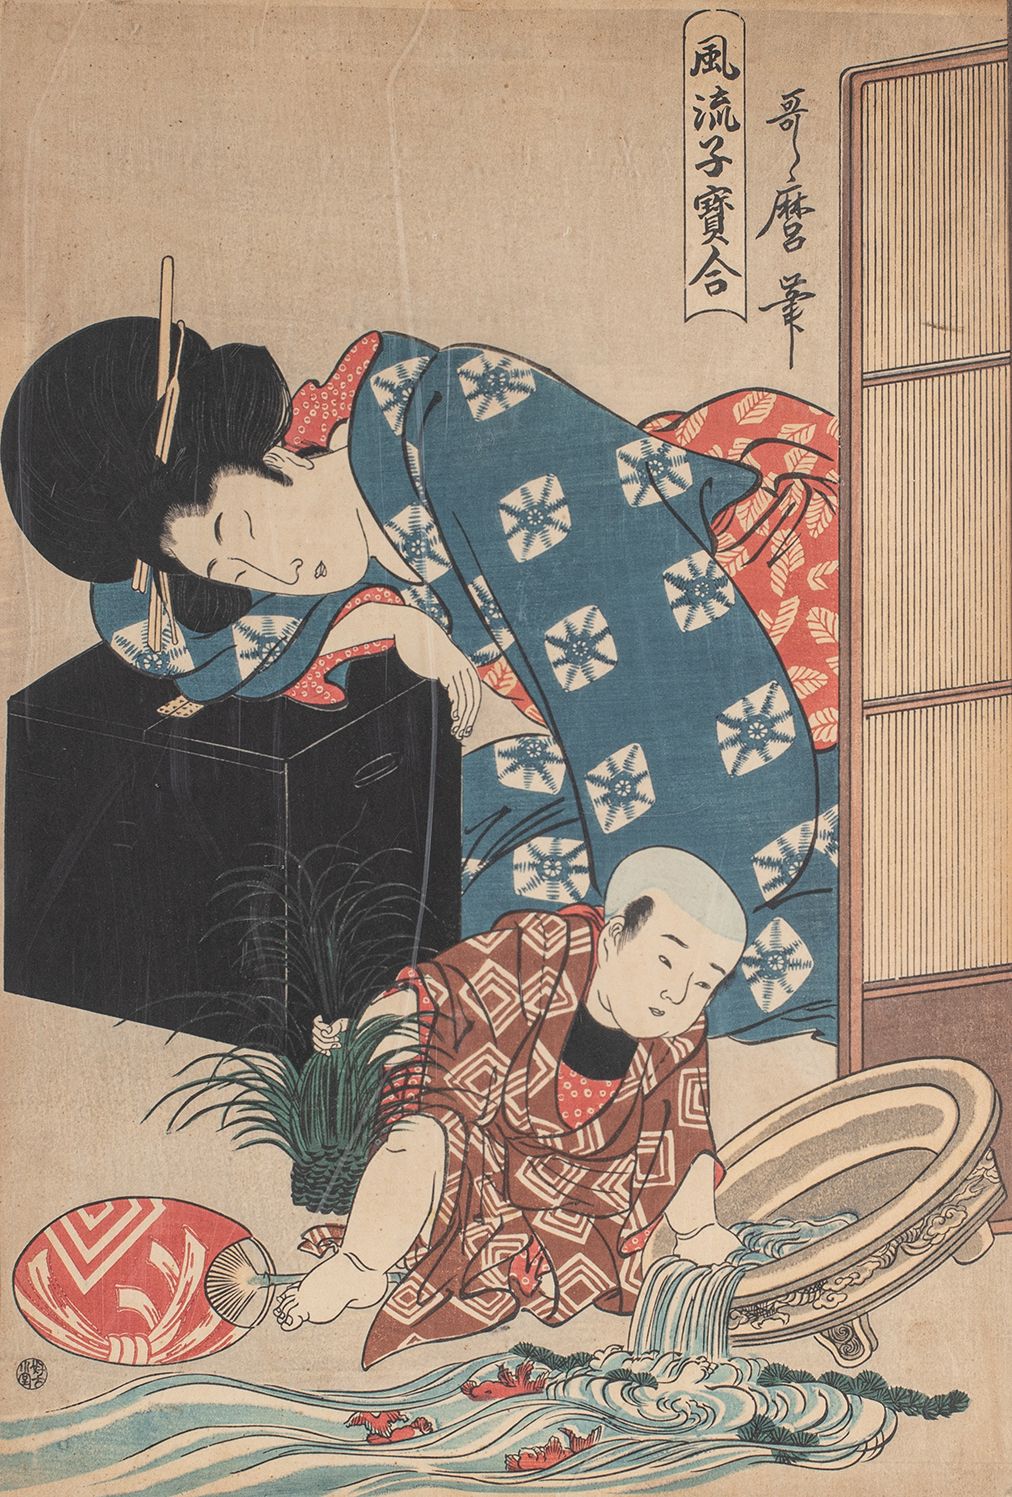 Null 
Impresión de Utamaro.

Copia del siglo XX

Formato Oban.